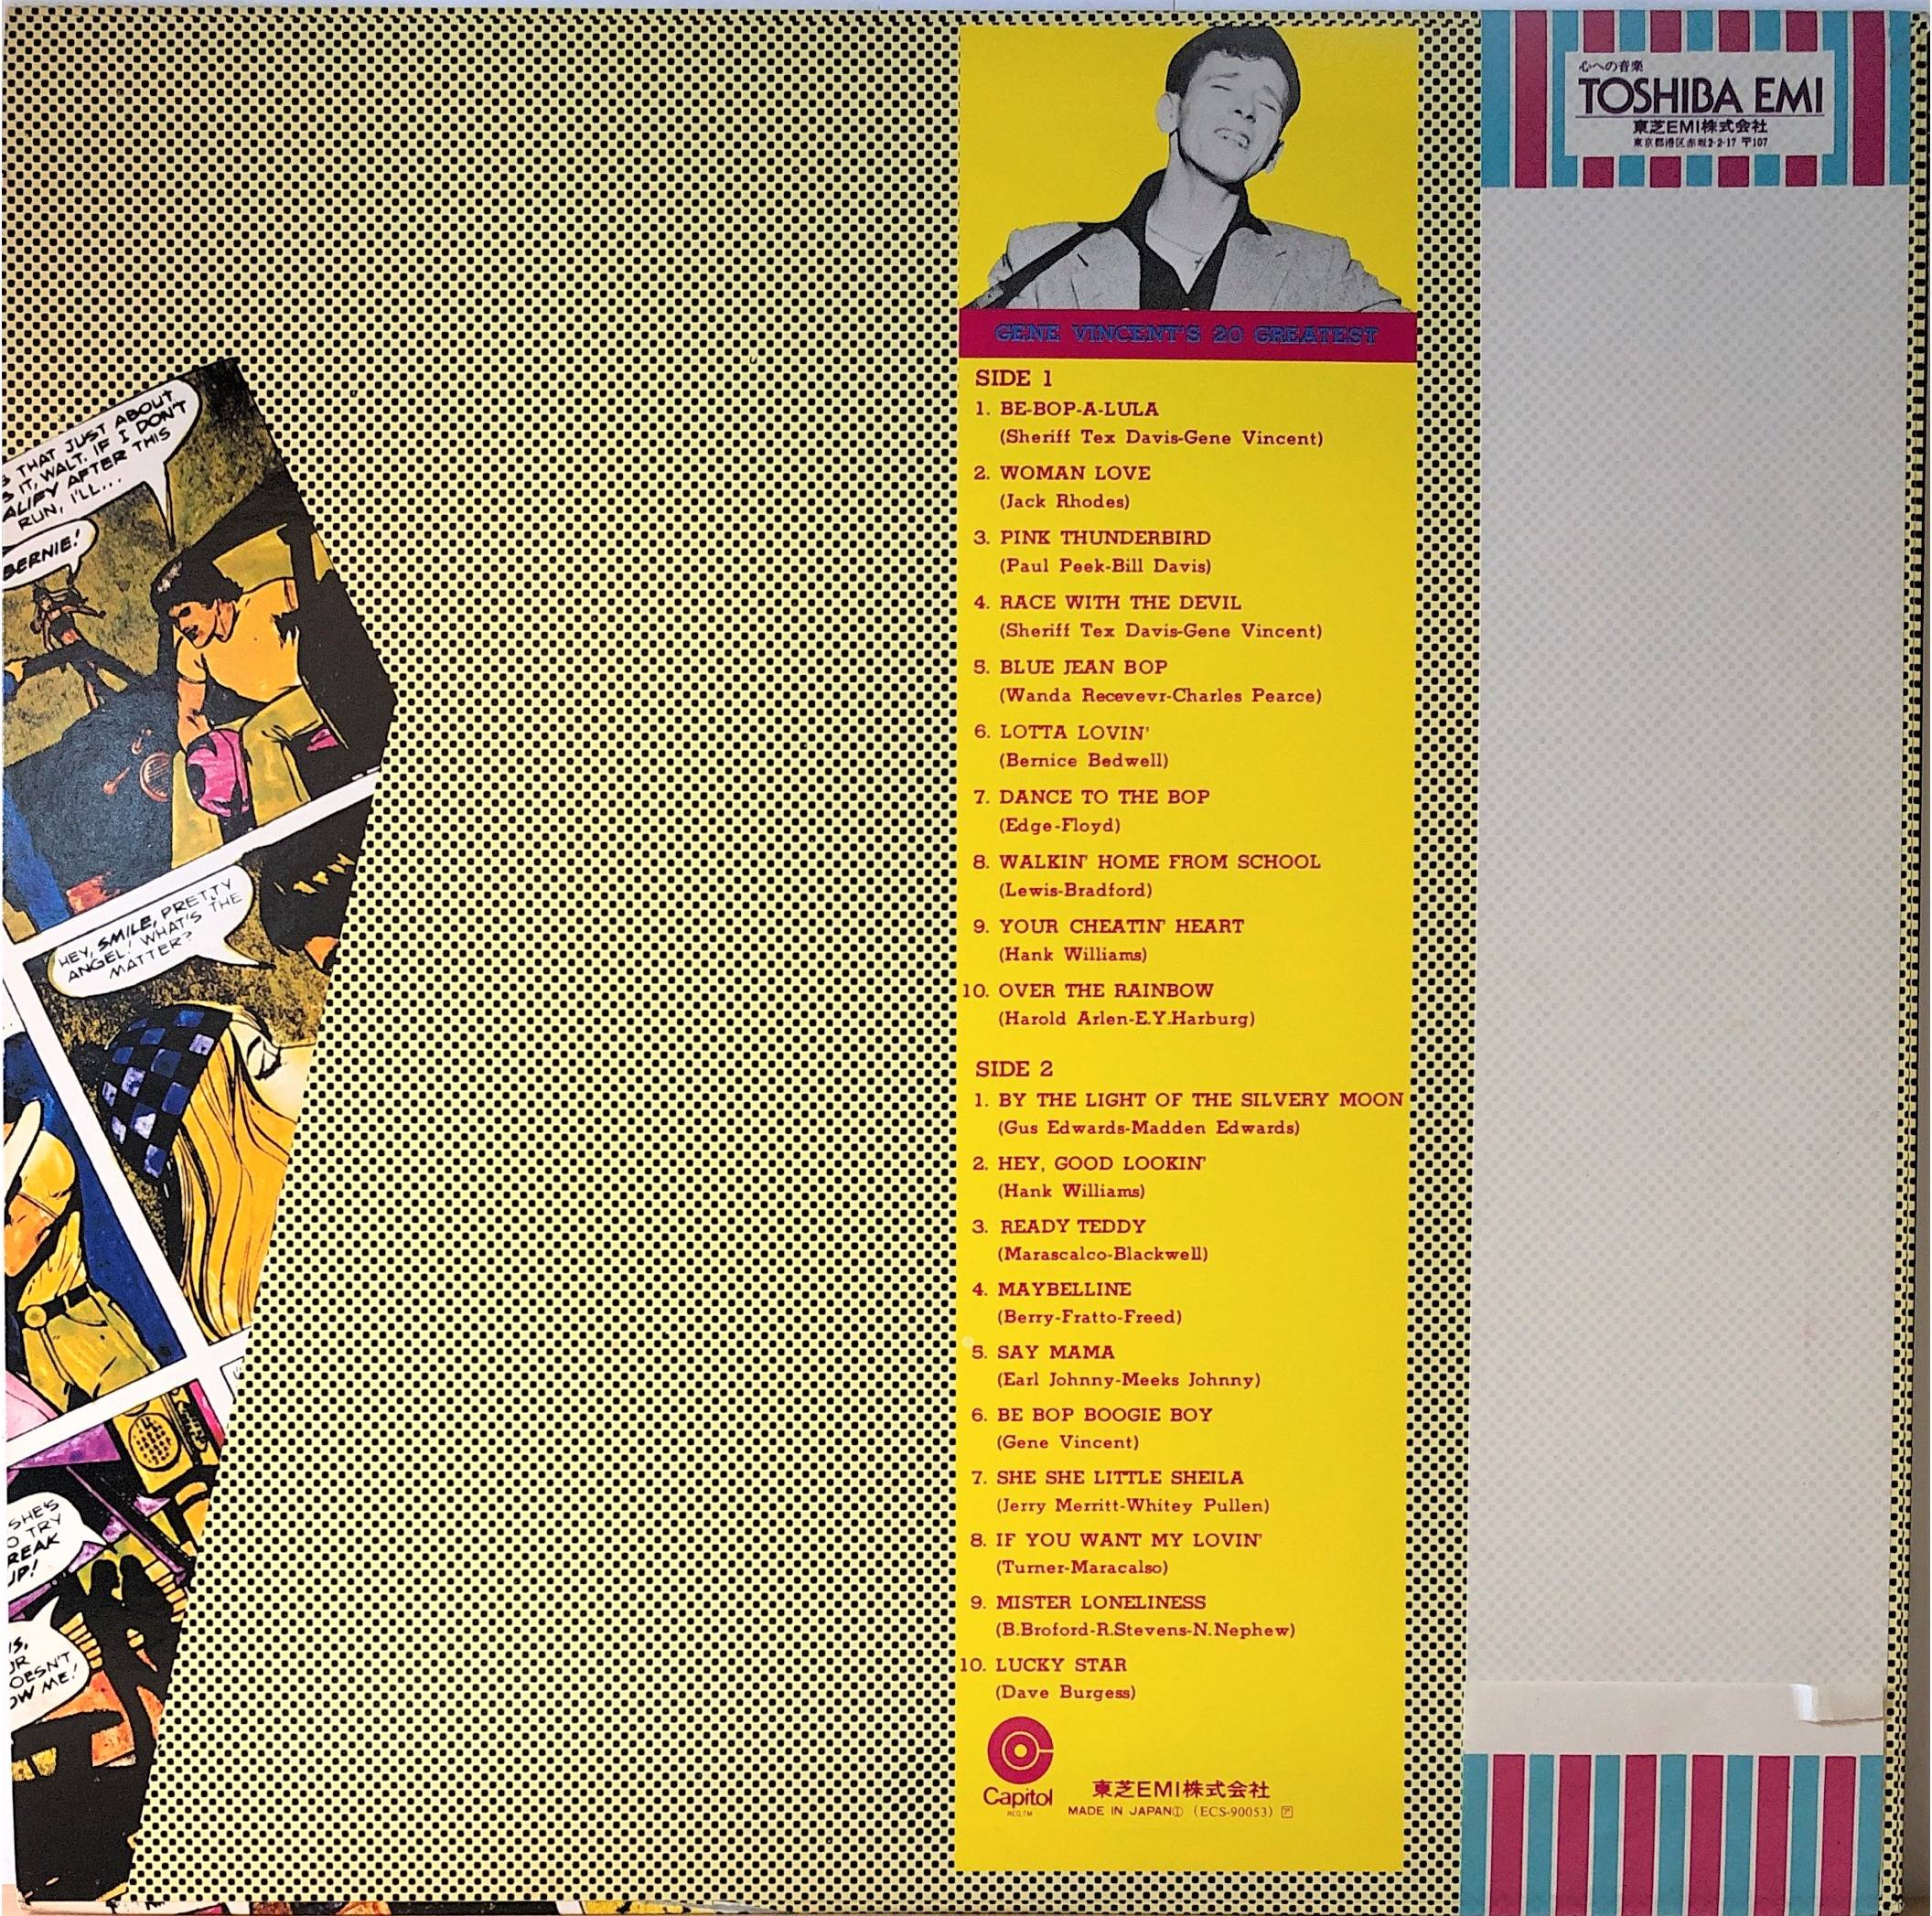 Gene Vincent ‎– 20 Greatest | 中古レコード通販・買取のアカル・レコーズ